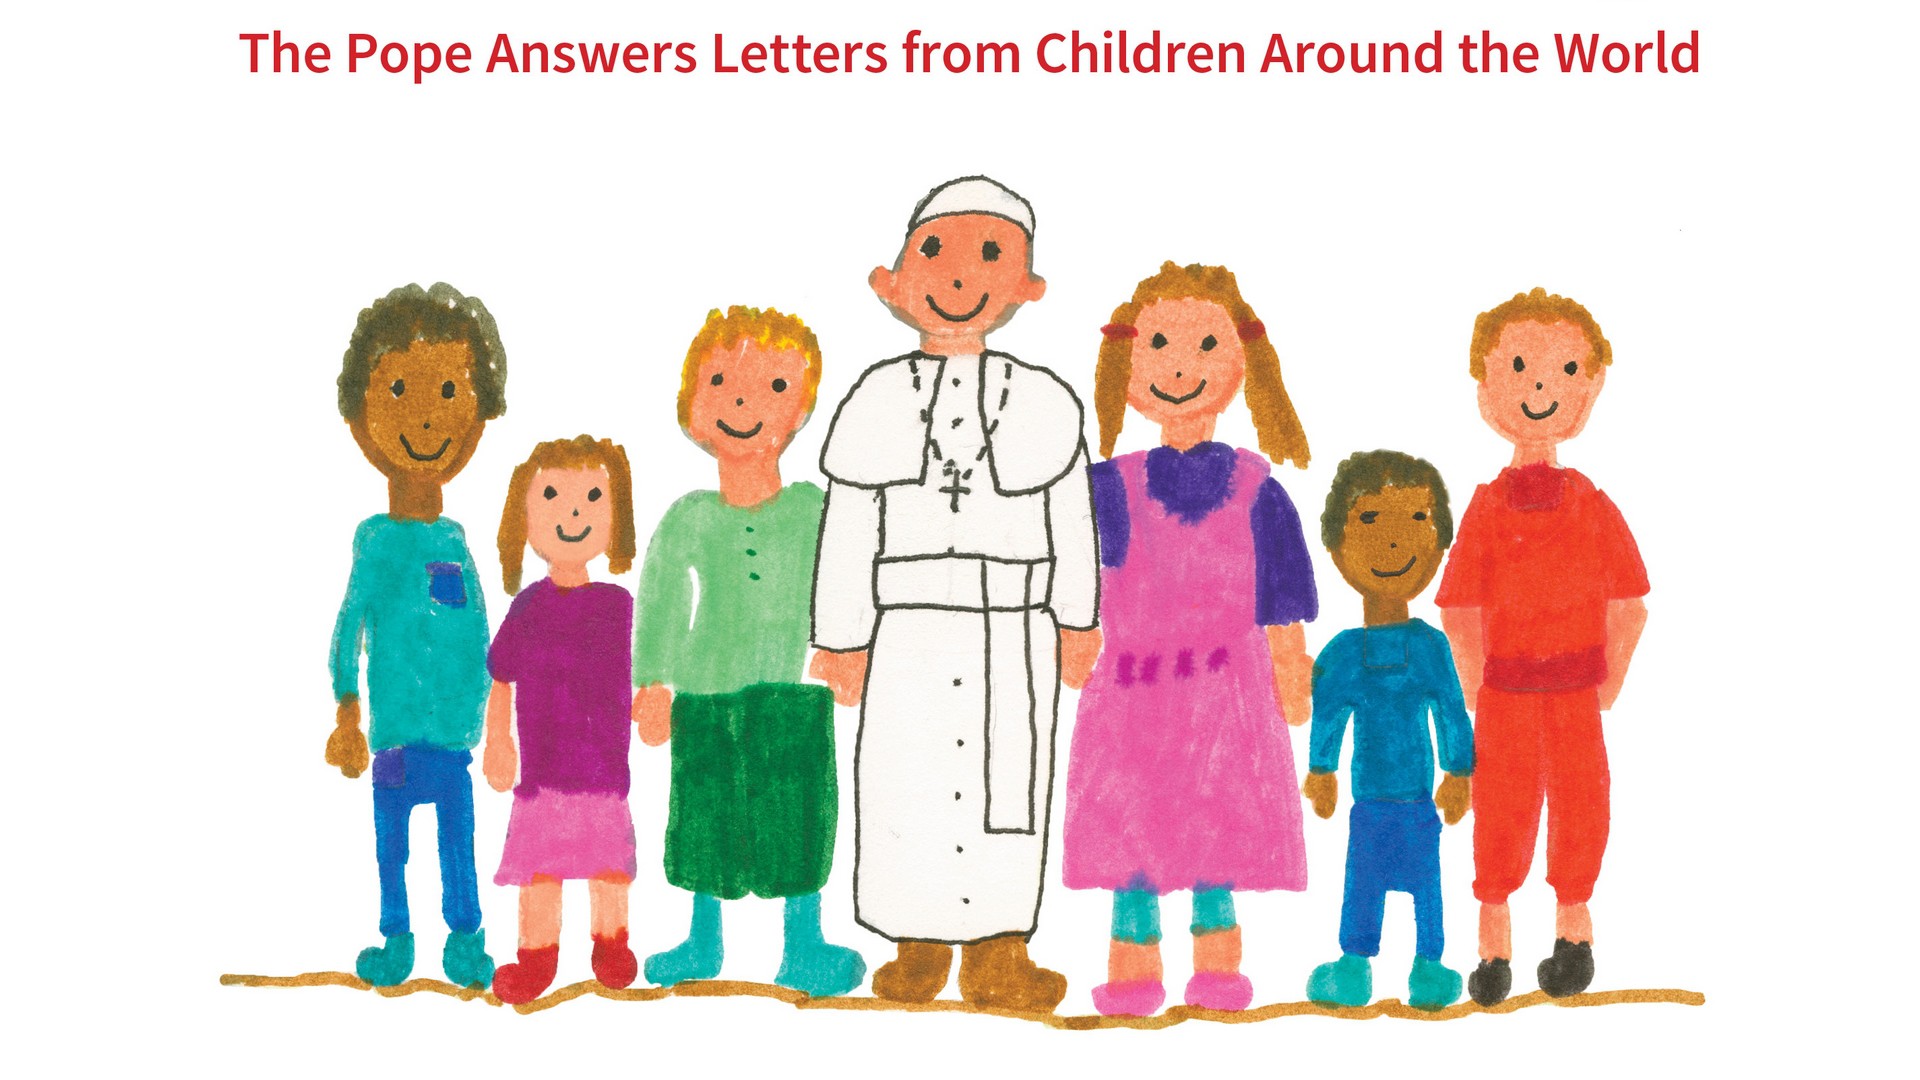 Des lettres d'enfants du monde entier adressée au pape François, ainsi que ses réponses, feront l'objet d'une publication.